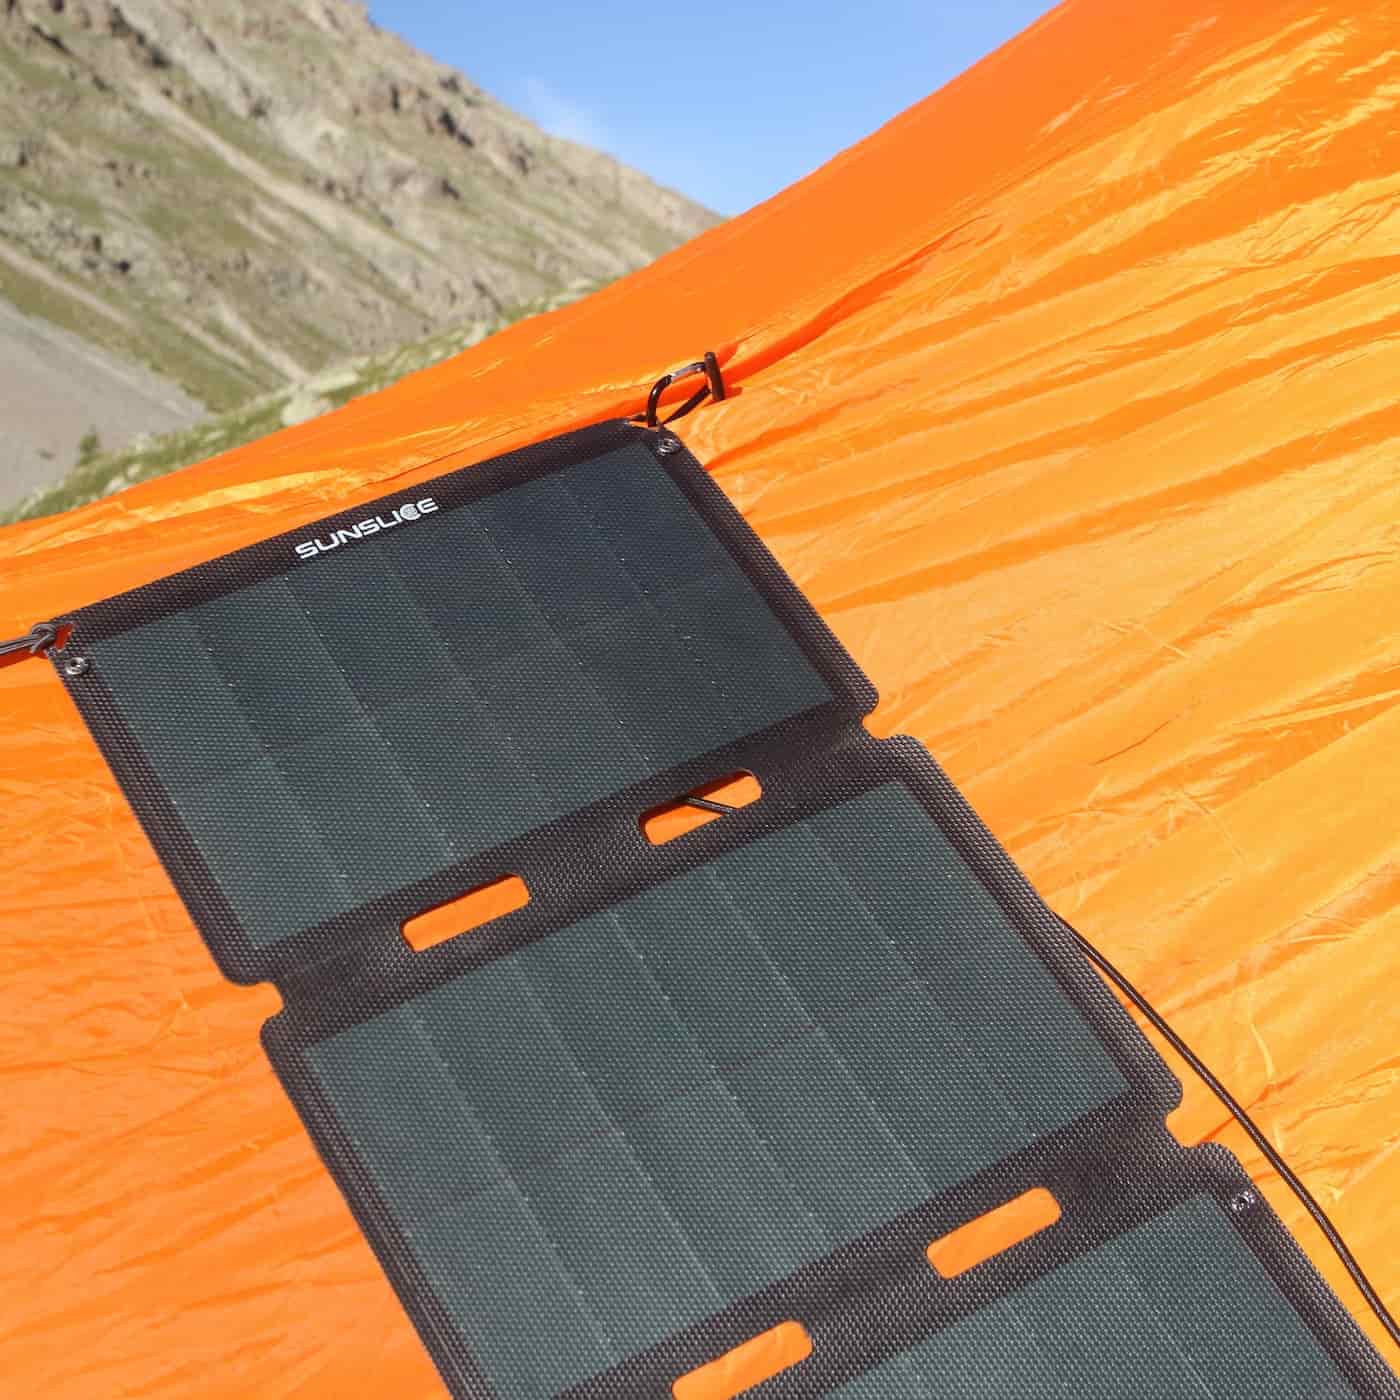 draagbaar zonnepaneel voor kamperen bevestigd aan een tent op een zonnige berg